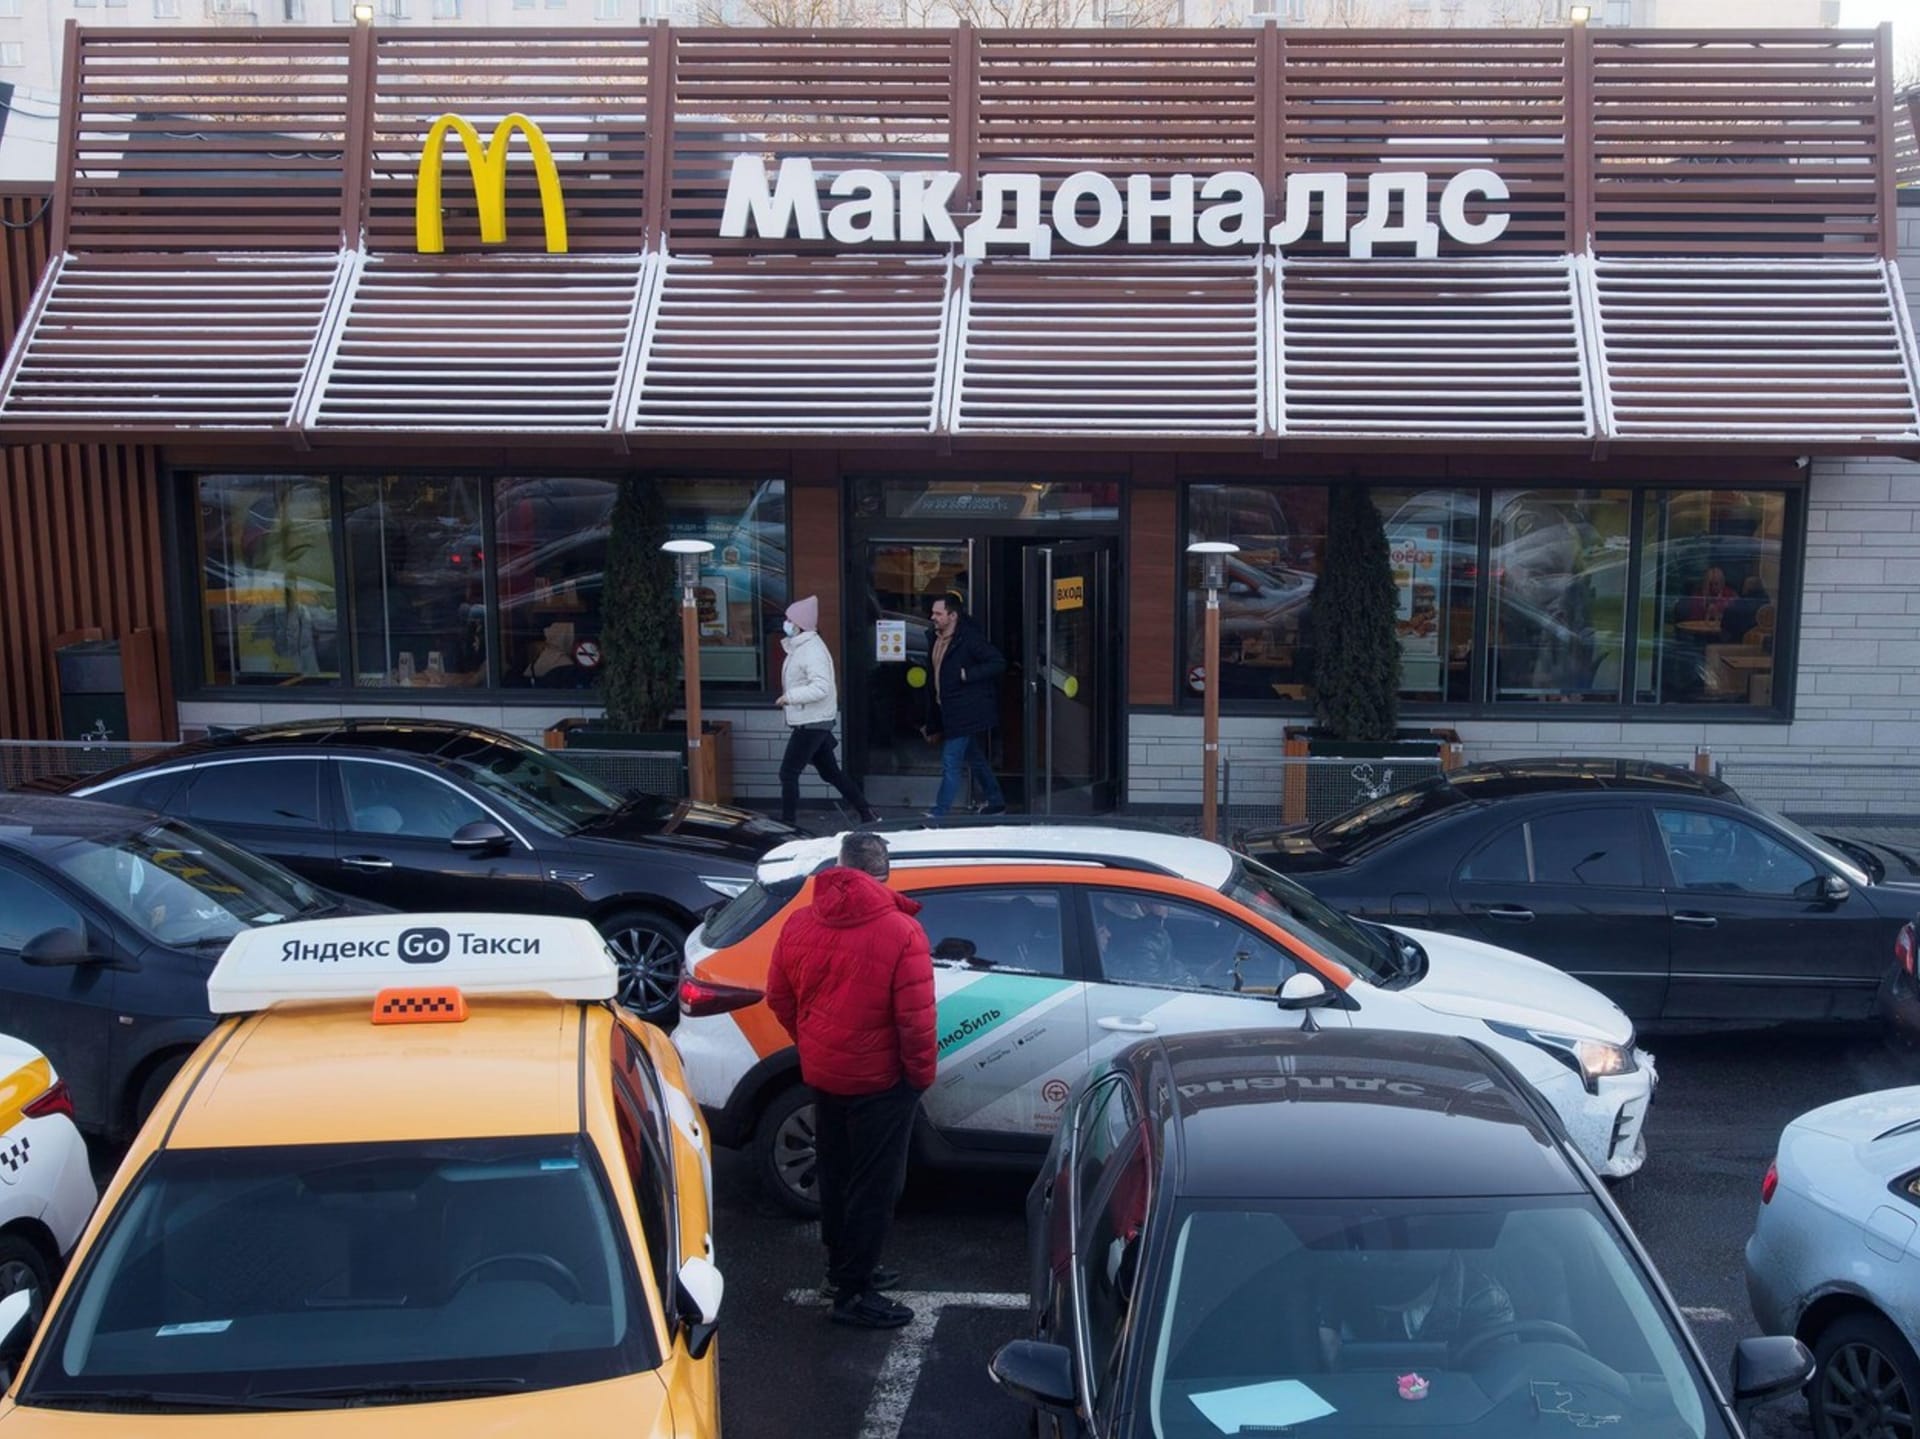 Rusove vzali prodejny amerického fastfoodového řetězce McDonalds pred uzavrenim utokem.